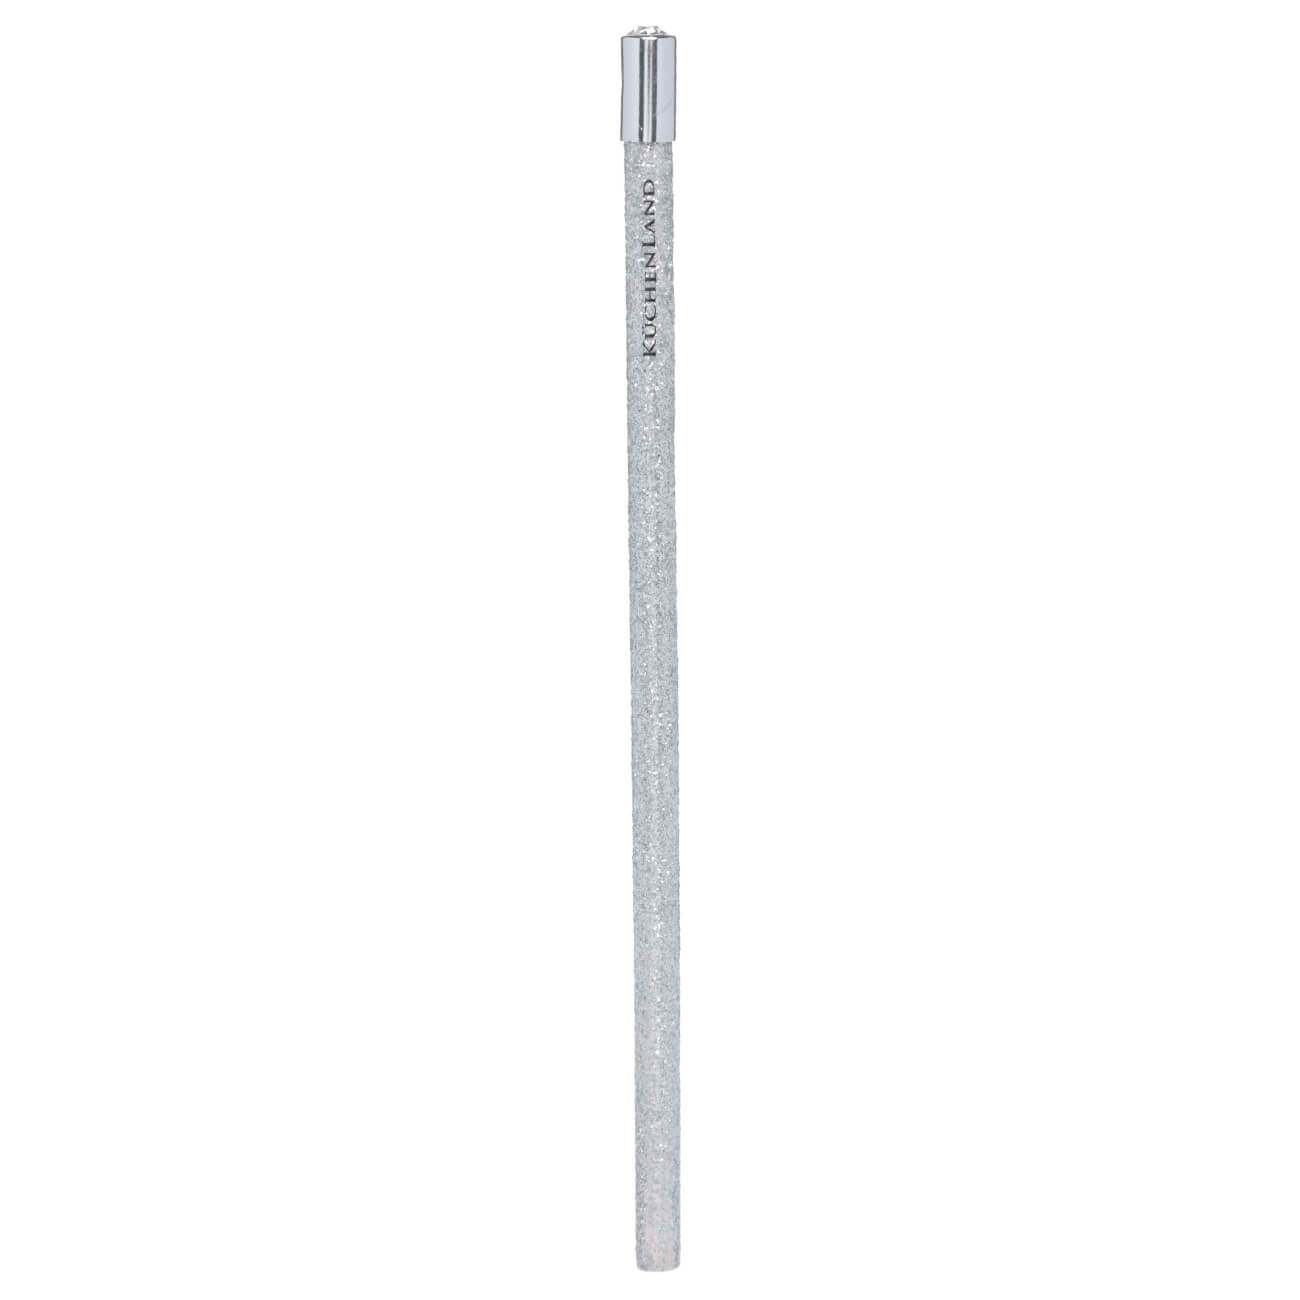 Карандаш, 18 см, чернографитный, серебристый, Draw sparcle чернографитный карандаш berlingo